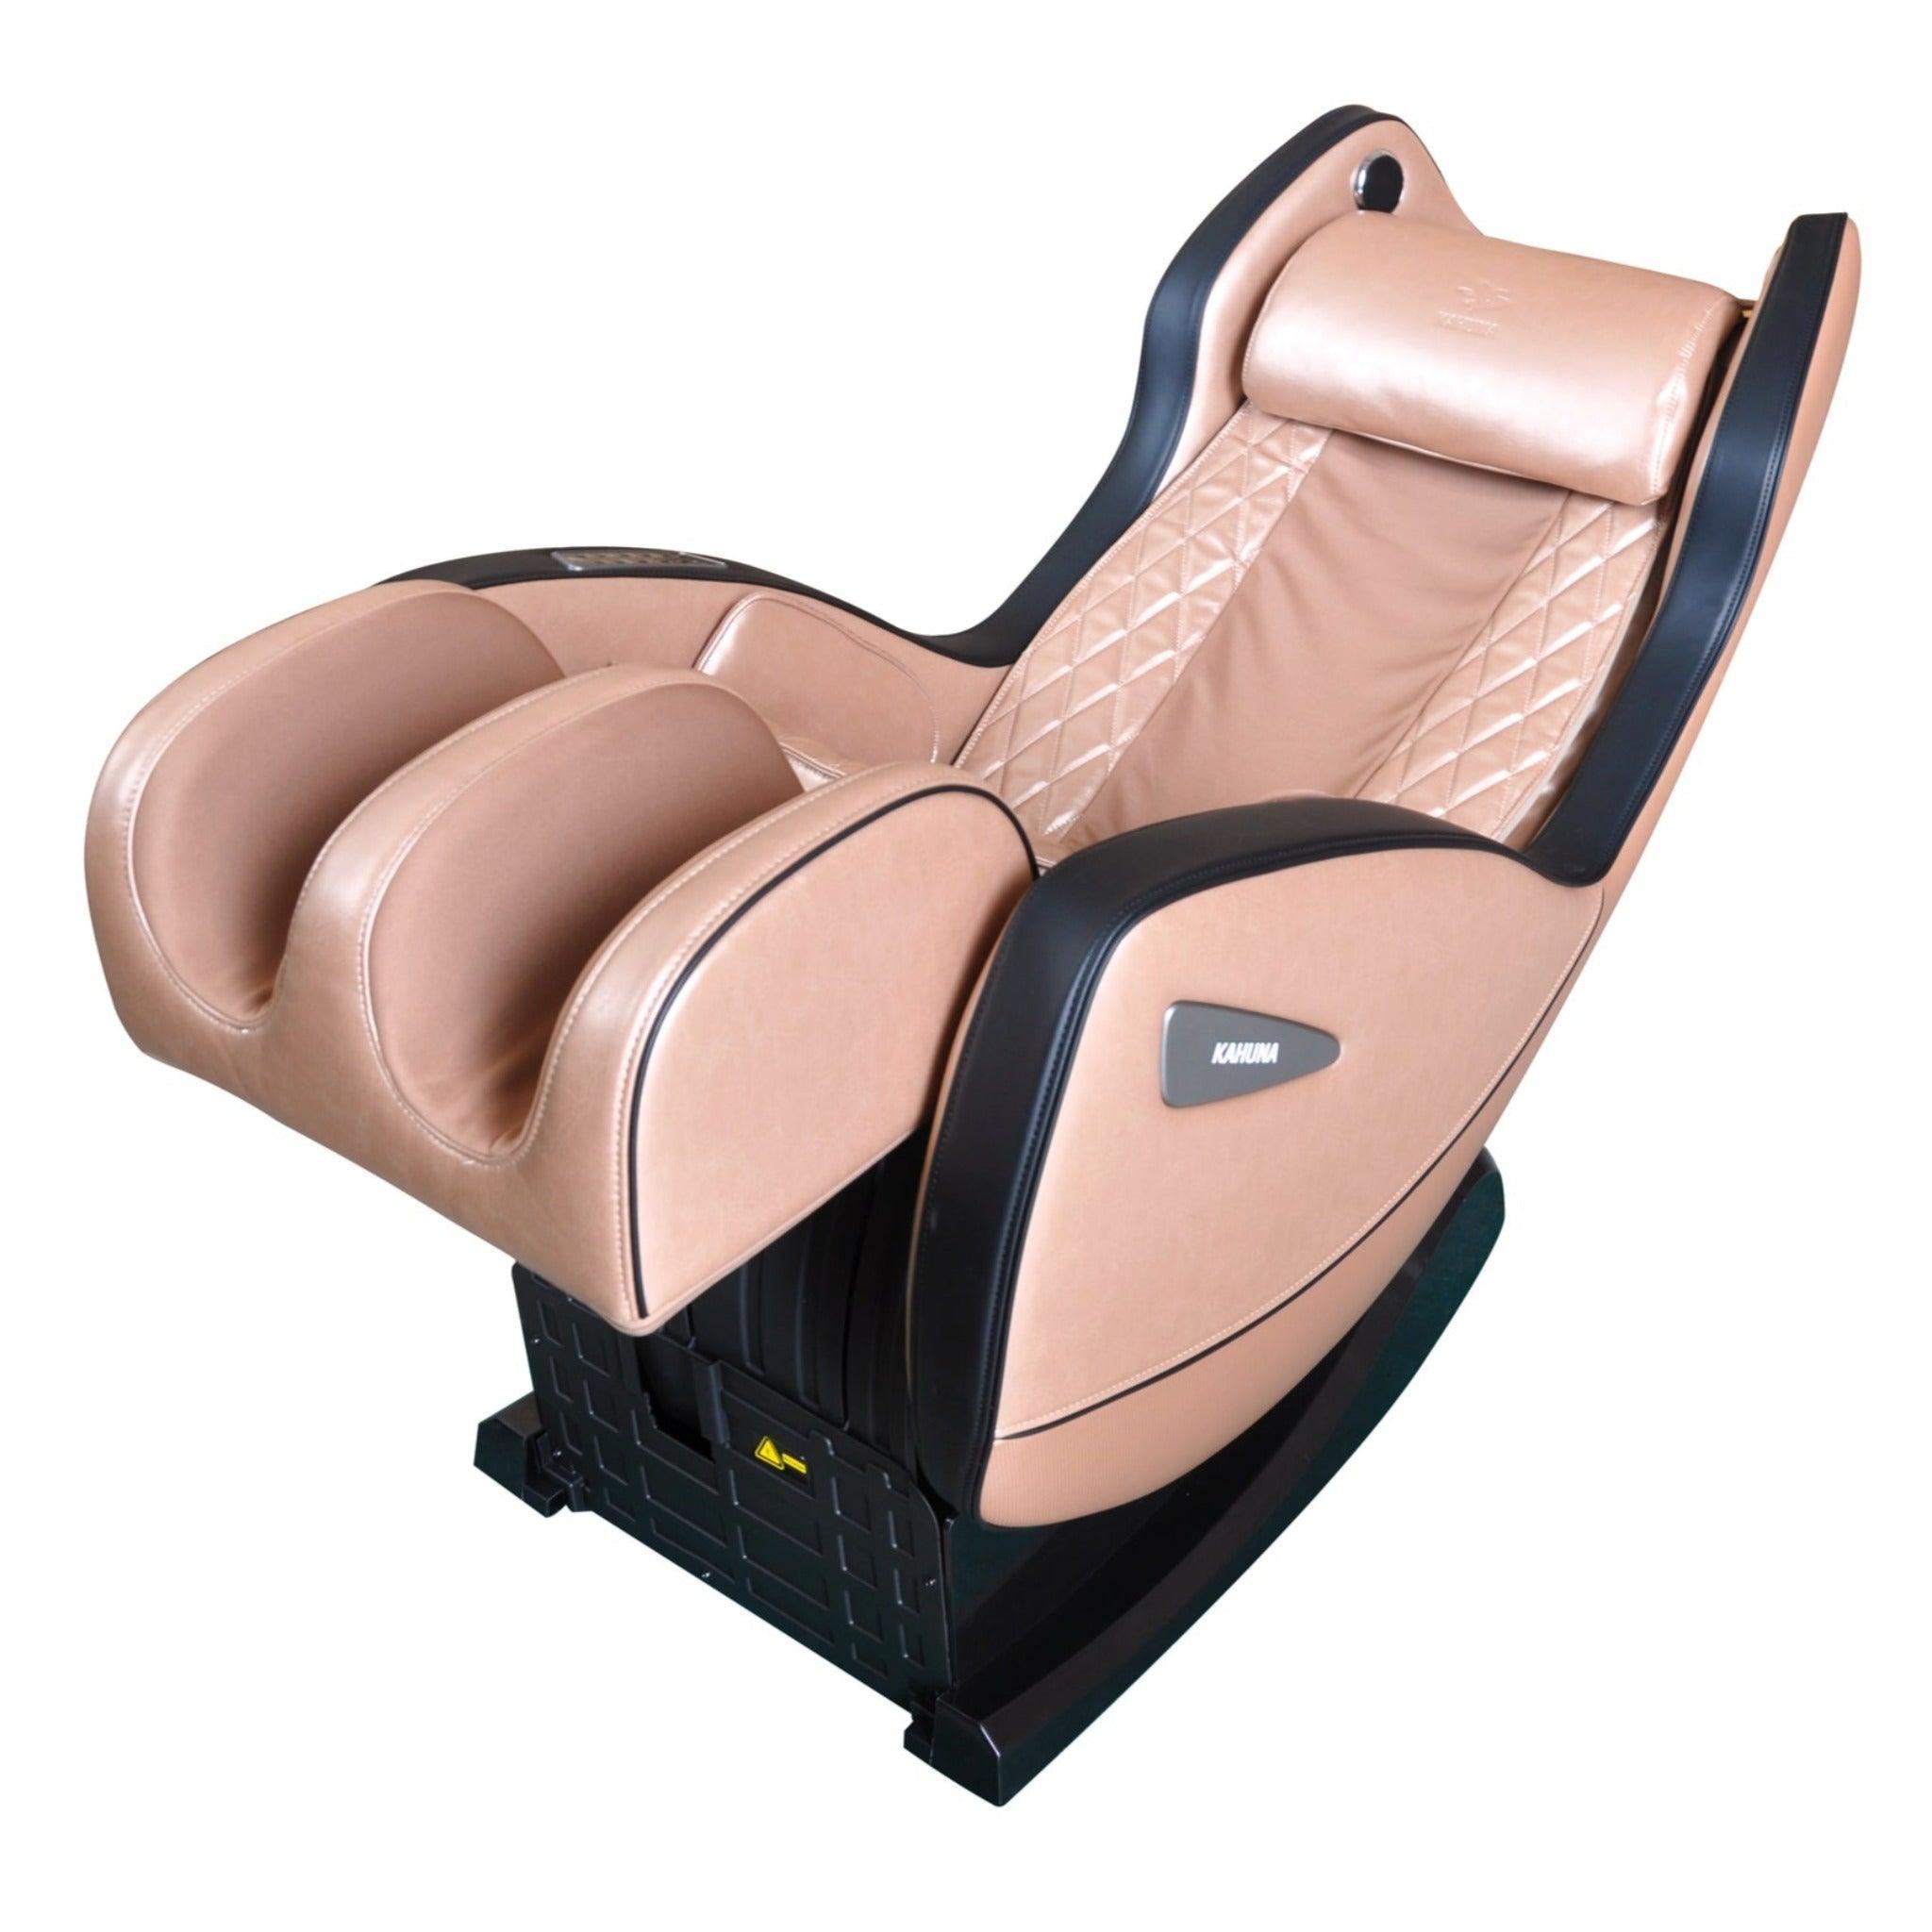 Kahuna Hani 3800 Compact Massage Chair - KCMHANI3800BLACK - Health & Beauty > Massage & Relaxation > Massage Chairs at zebramassagechairs.com